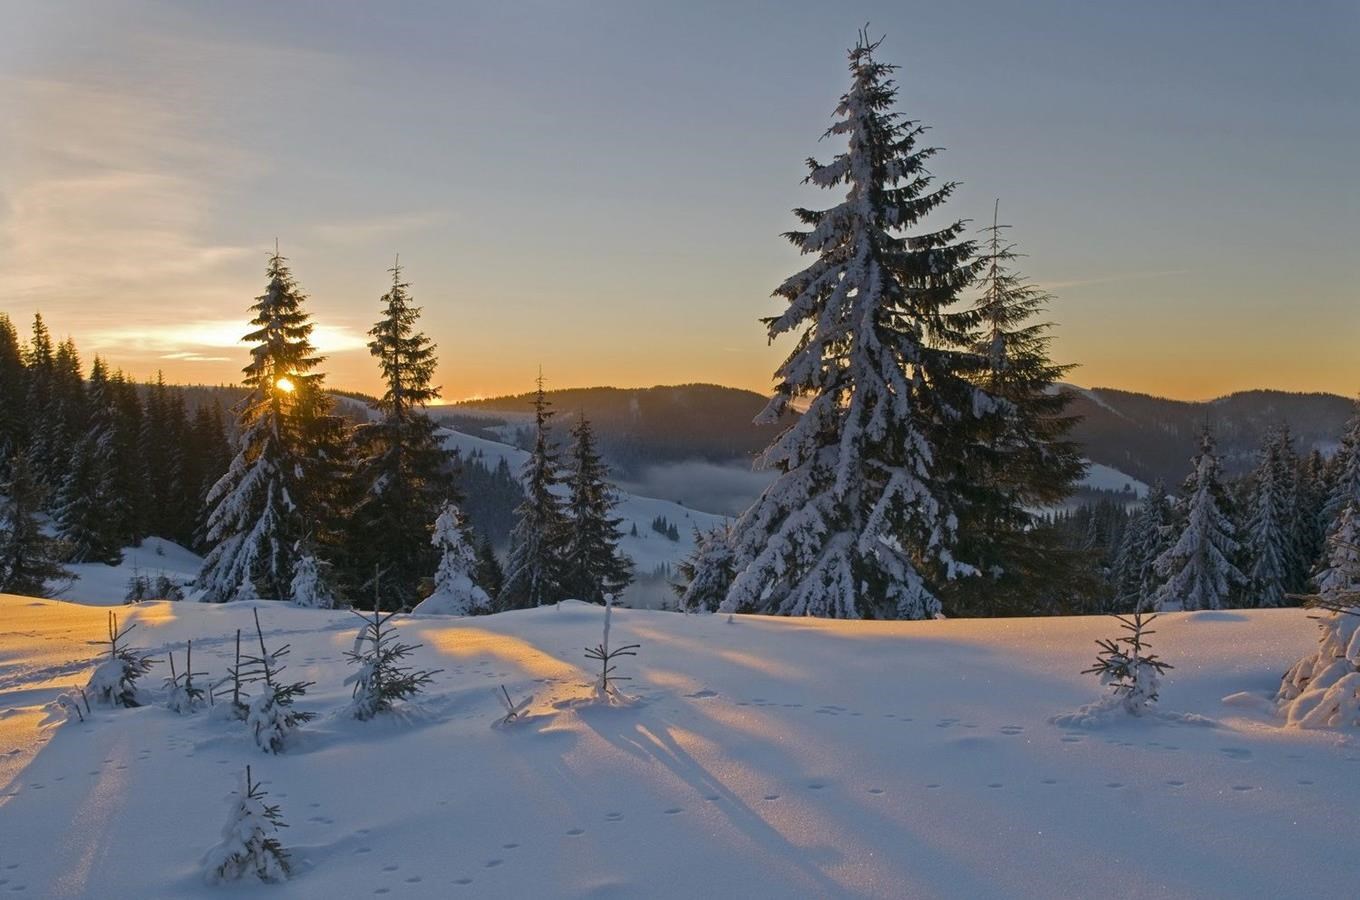 Šumavou na sněžnicích - výlety přírodou se Správou NP Šumava